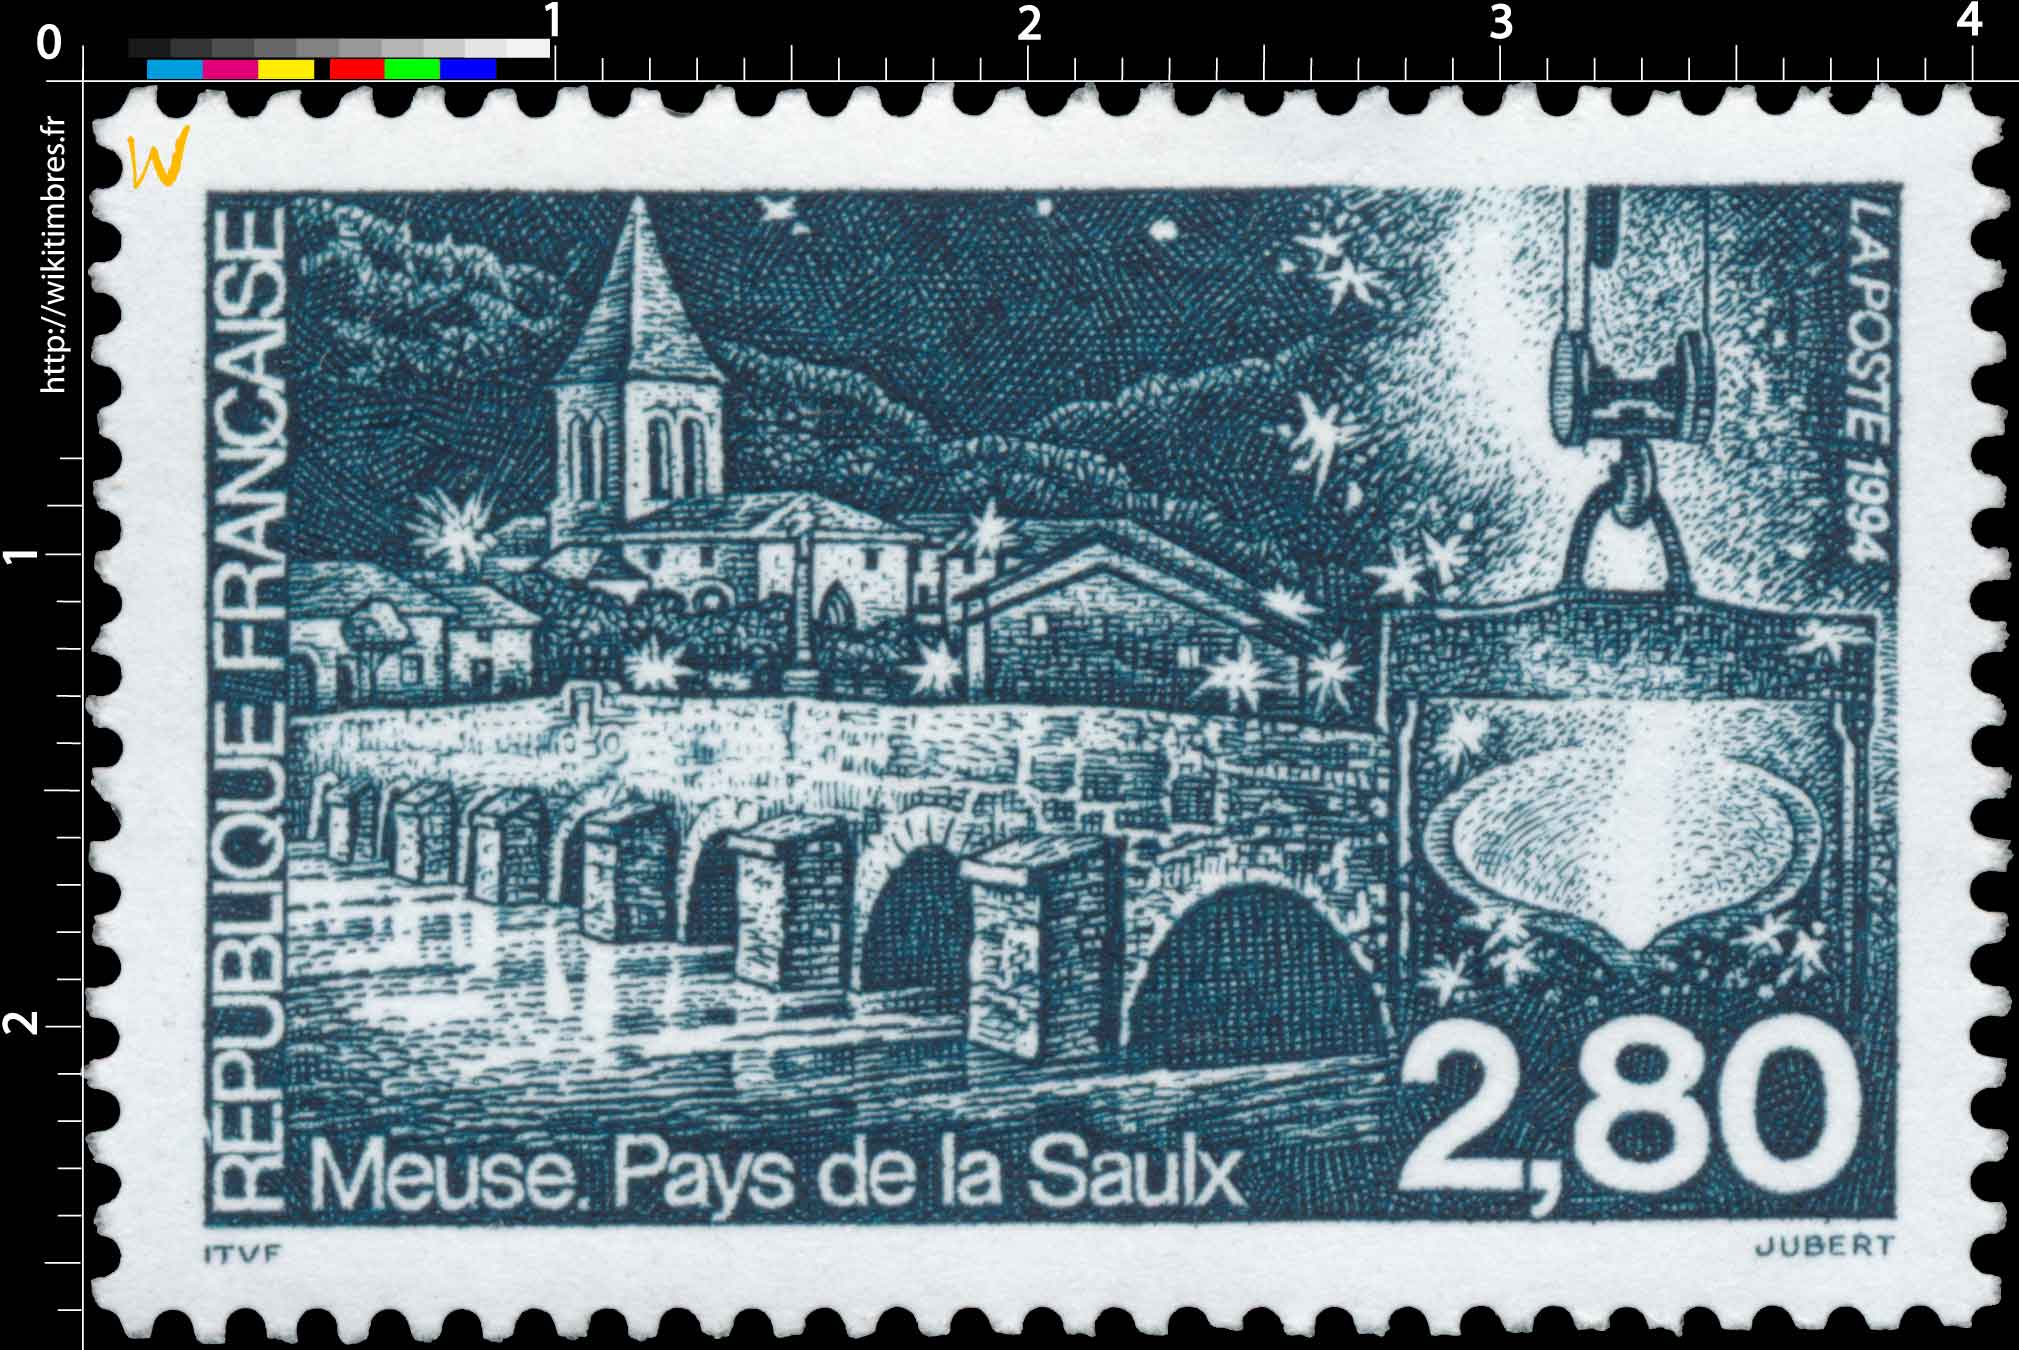 1994 Meuse. Pays de la Saulx